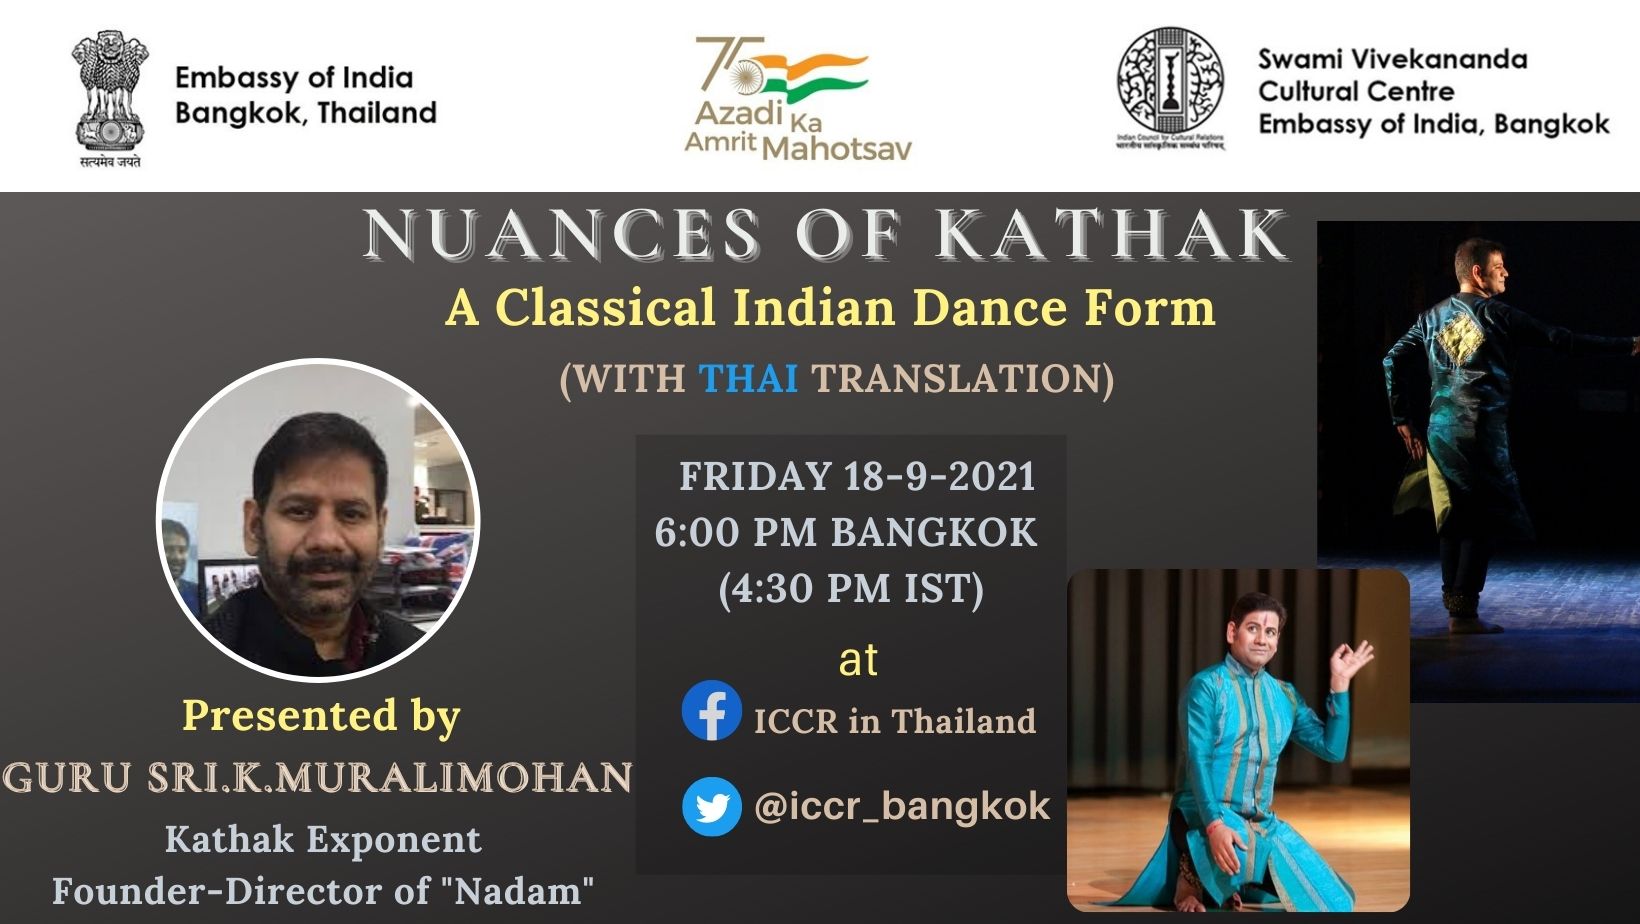 एसवीसीसी, ईओआई, बैंकॉक "कथक की बारीकियां", गुरु मुरलीमोहन कल्वकलवा के साथ शास्त्रीय भारतीय नृत्य रूप पर बातचीत और उनके नृत्य विद्यालय 'नादम' द्वारा नृत्य प्रस्तुतियां।